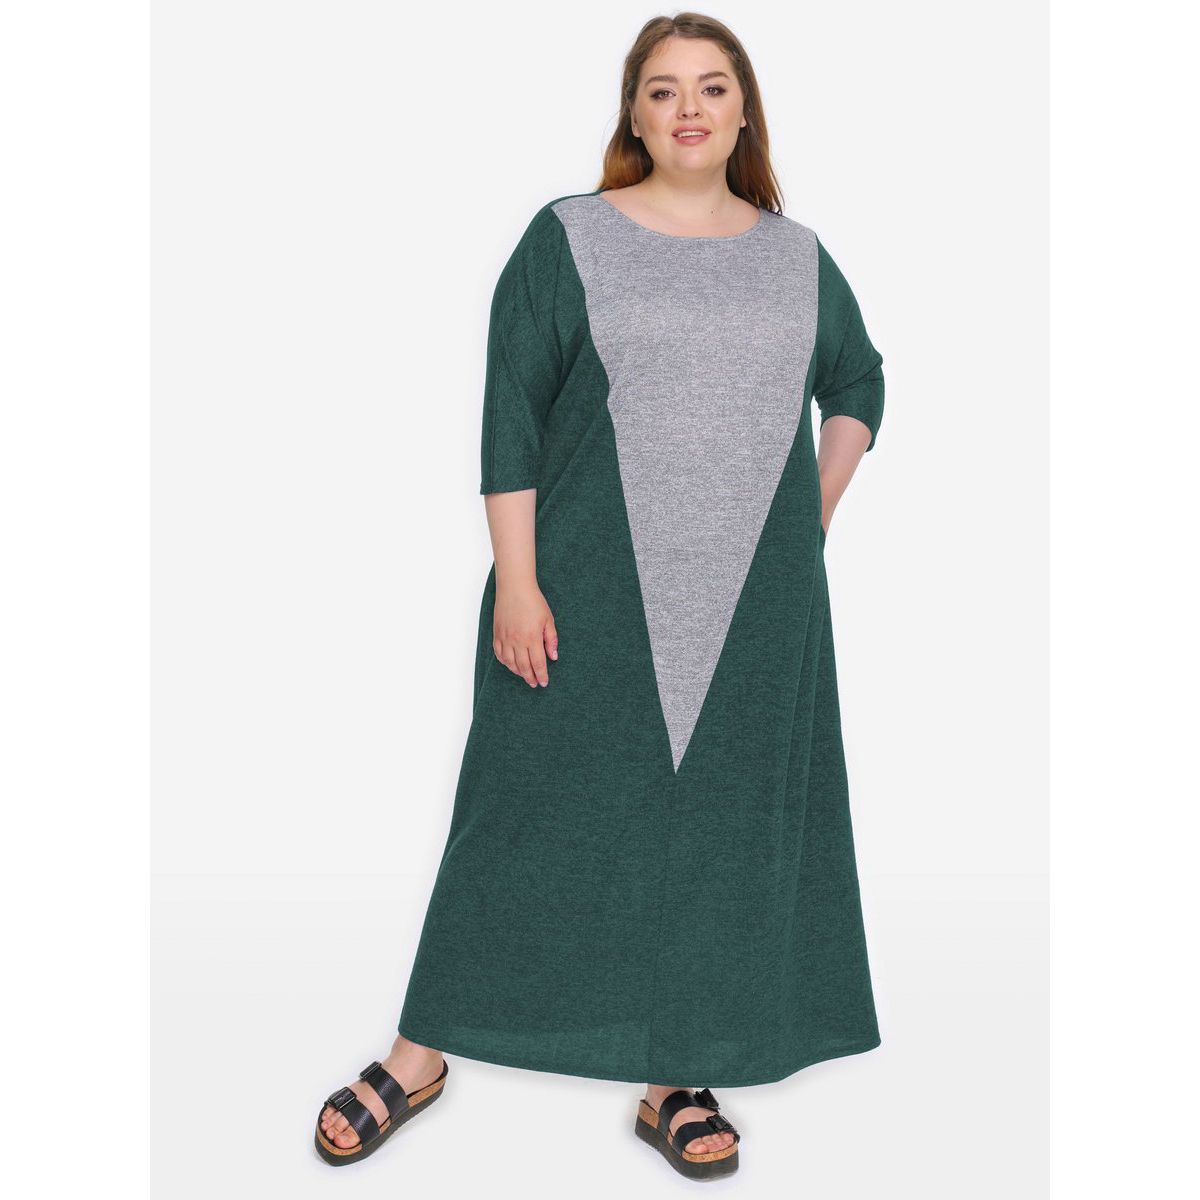 Платье из джерси, зеленый меланж, комбинированное с серым